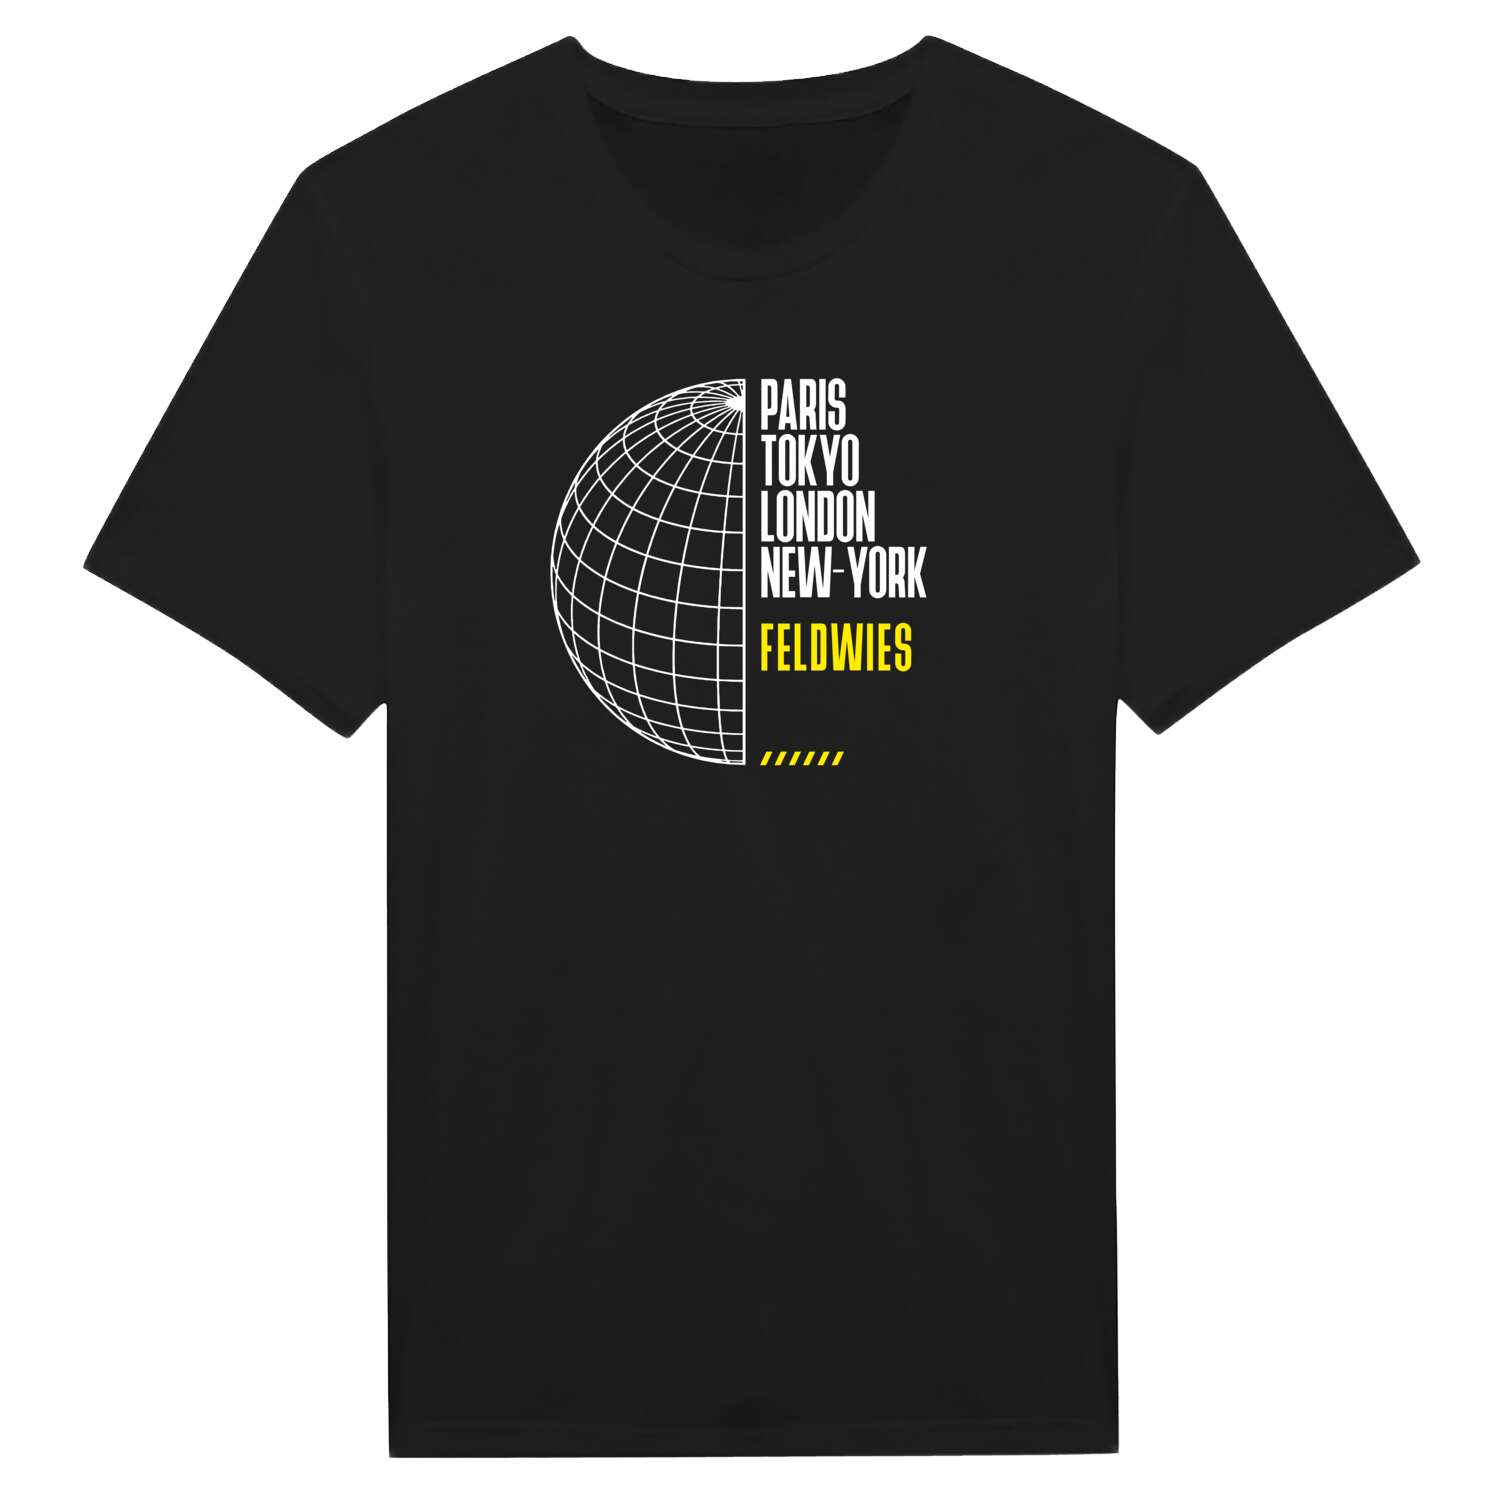 Feldwies T-Shirt »Paris Tokyo London«